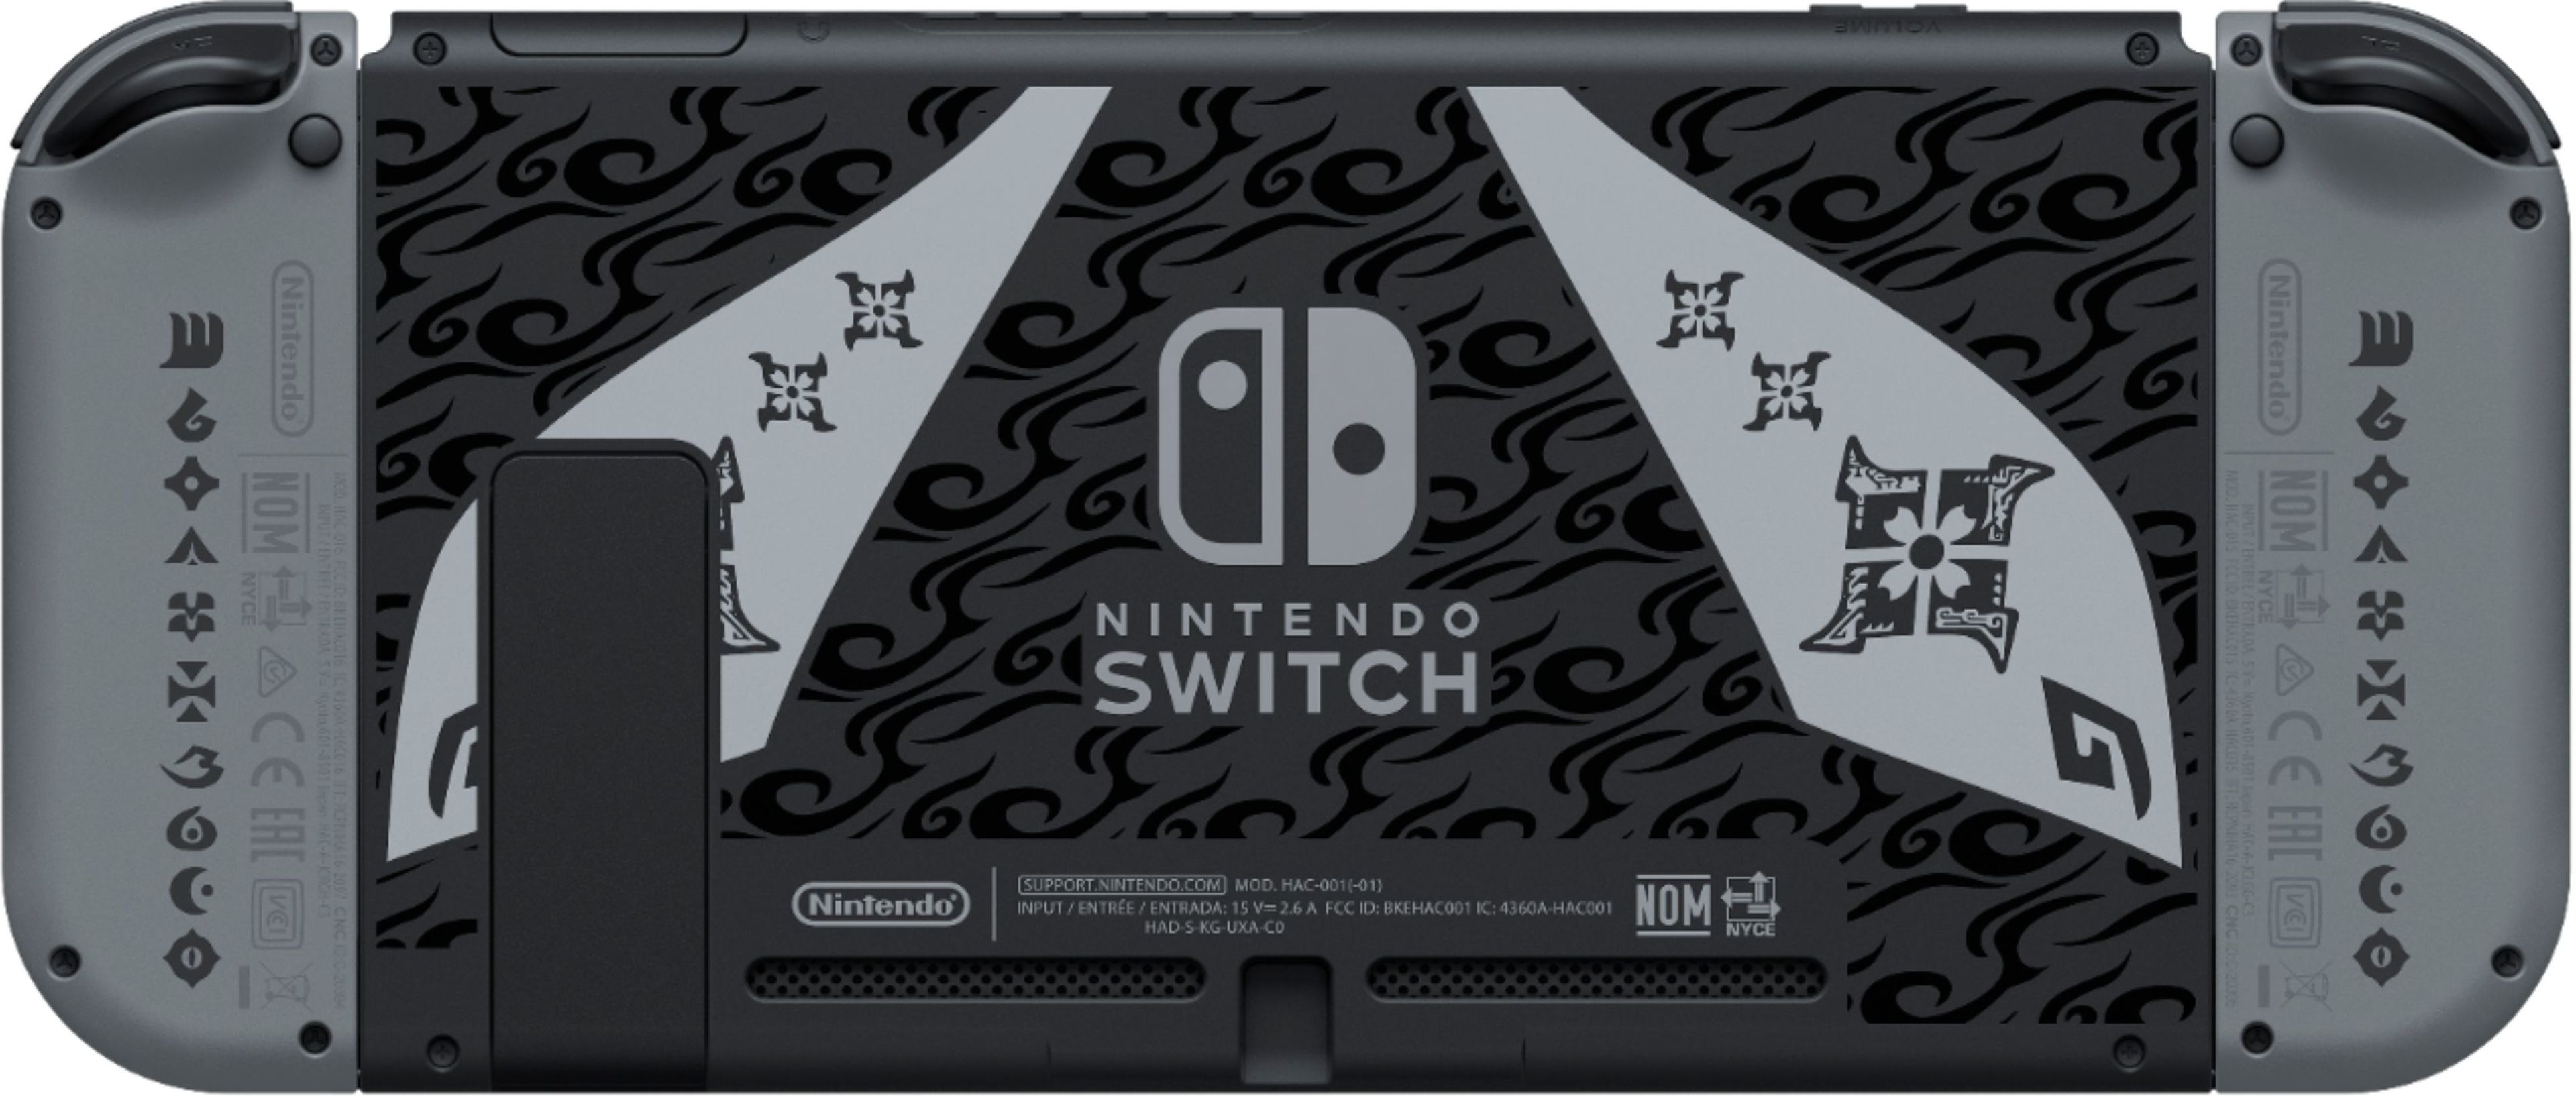 Nintendo Switch edición Monster Hunter